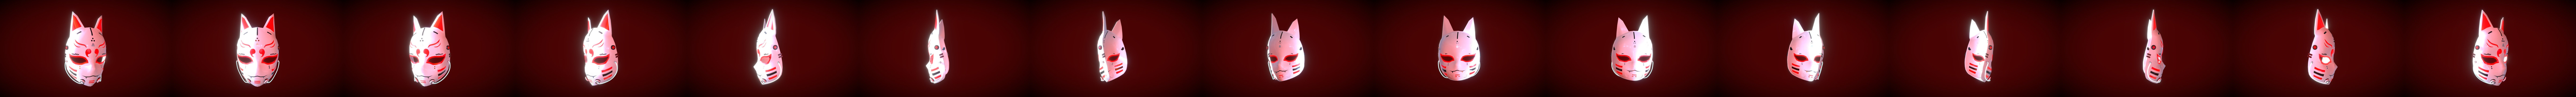 Cyberpunk Kitsune Mask - Buy Royalty Free 3D model by tran.ha.anh.thu.99  (@tran.ha.anh.thu.99) [813b5f9]